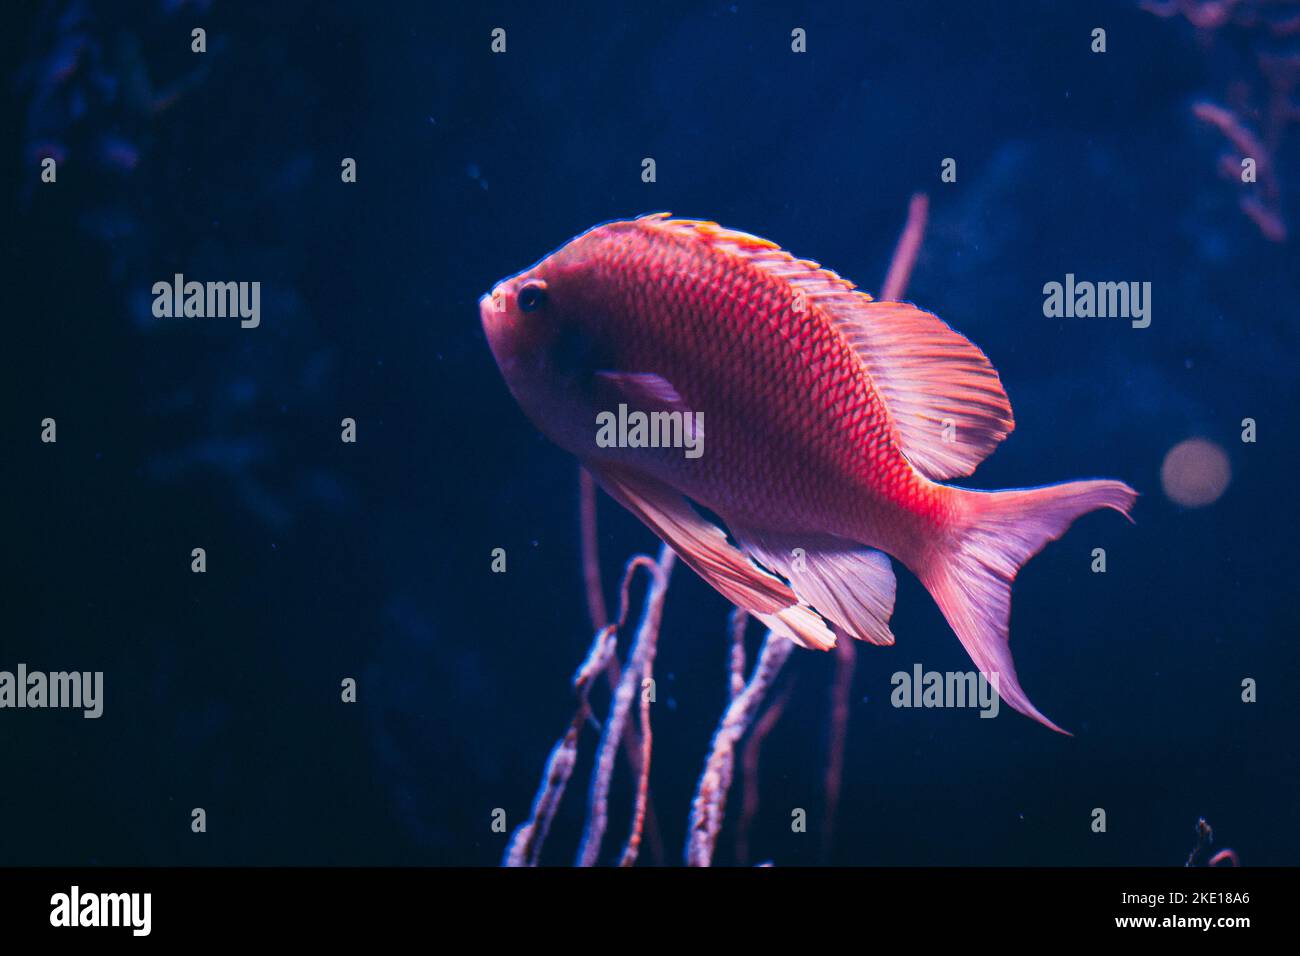 Aquarium freshwater fish swimming underwater Stock Photo